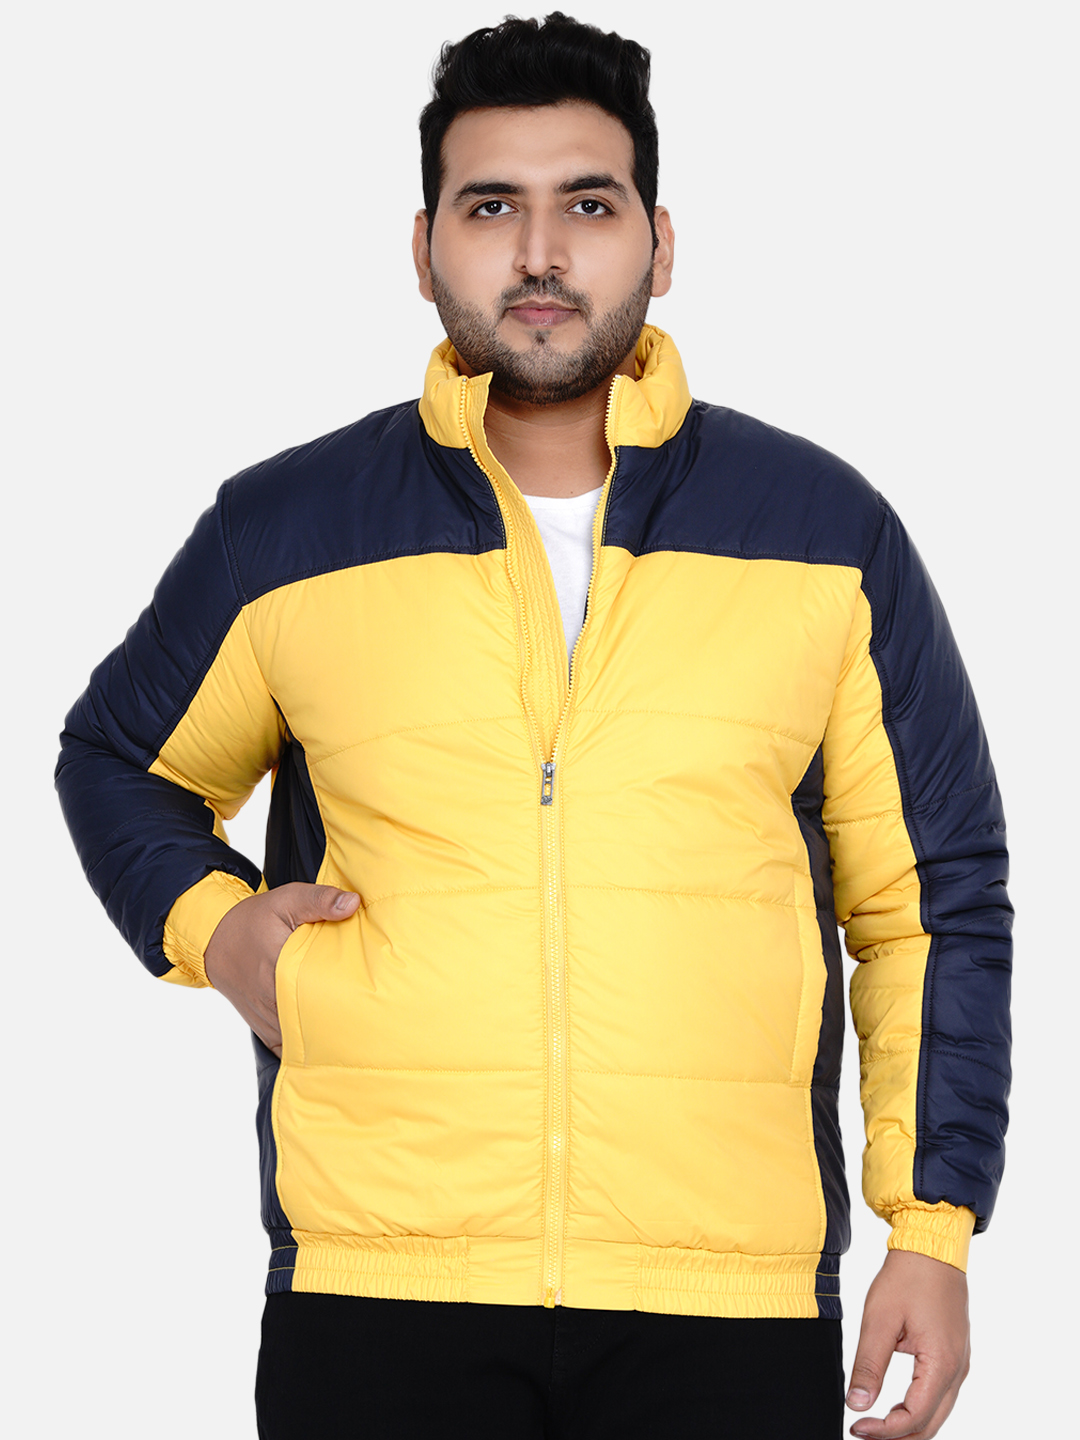 winterwear/jackets/JPJKT73005A/jpjkt73005a-5.jpg